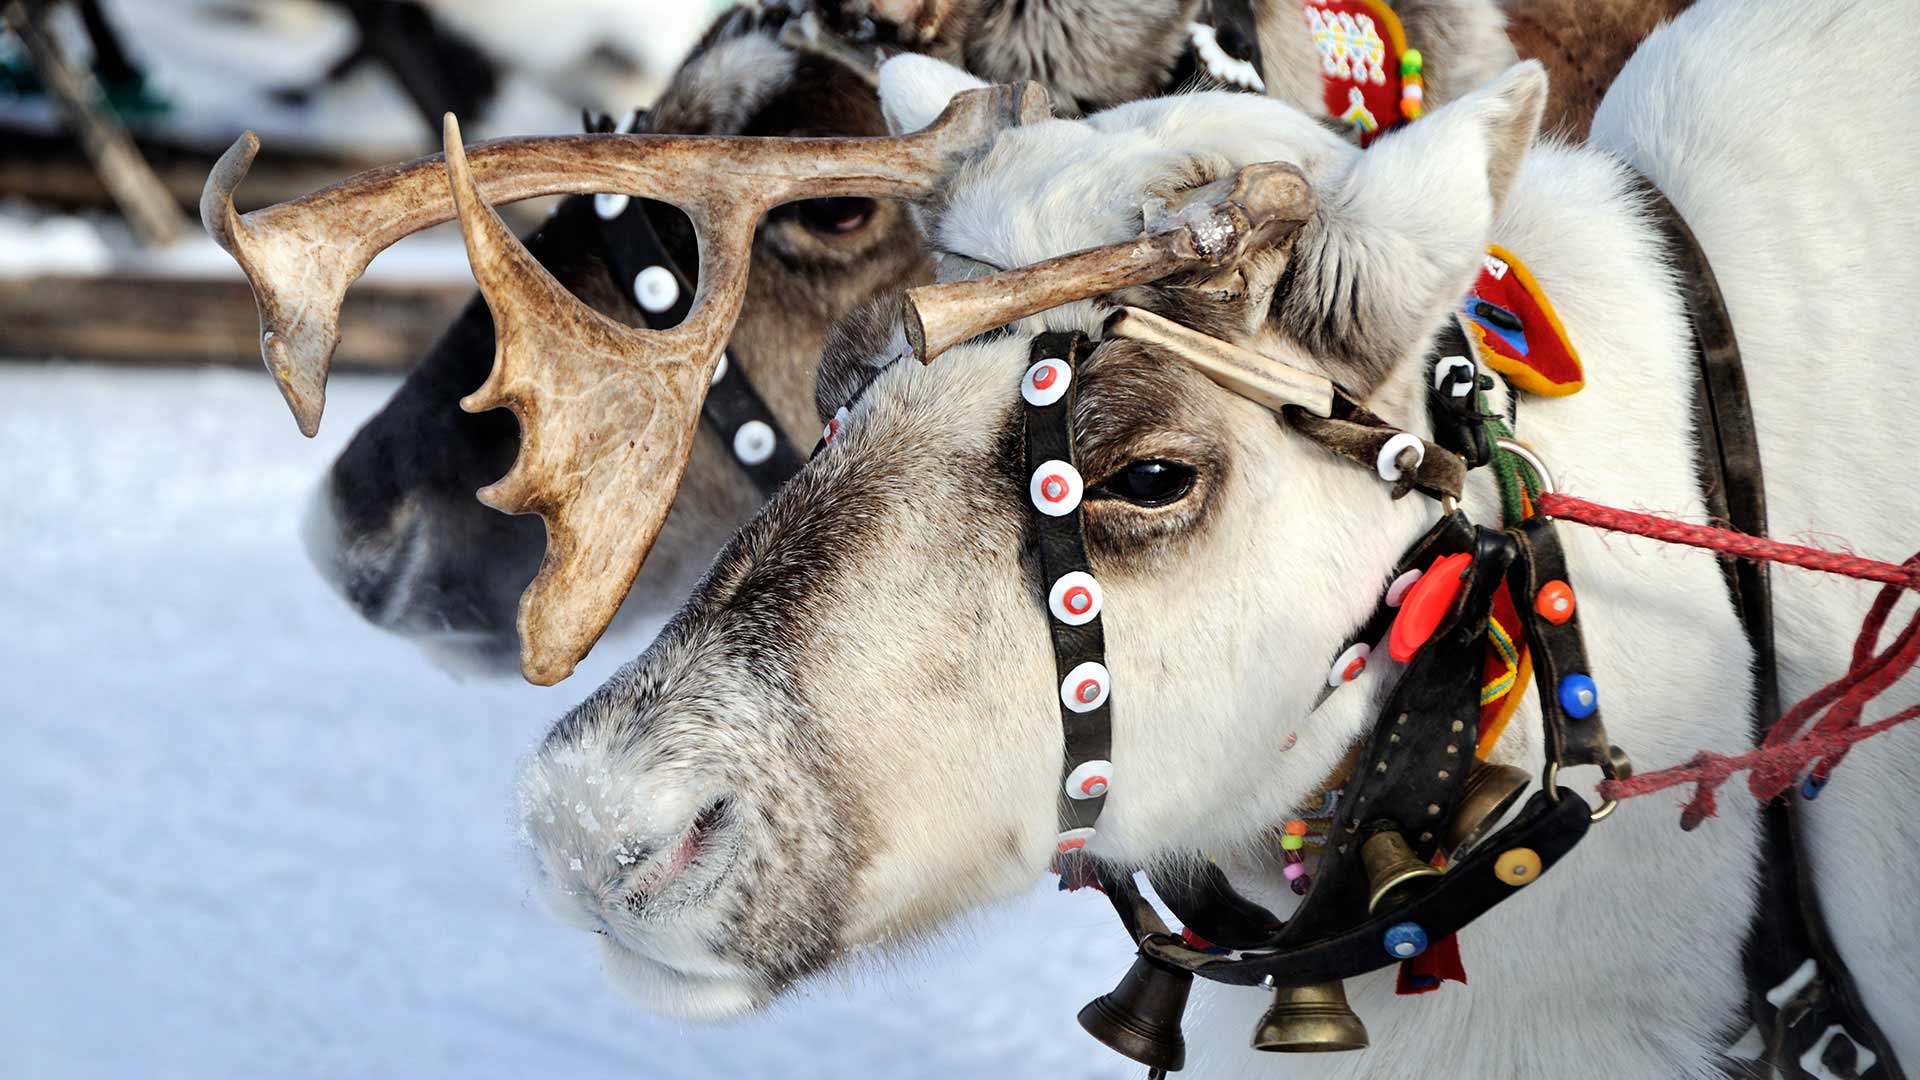 Santa’s reindeer in Lapland